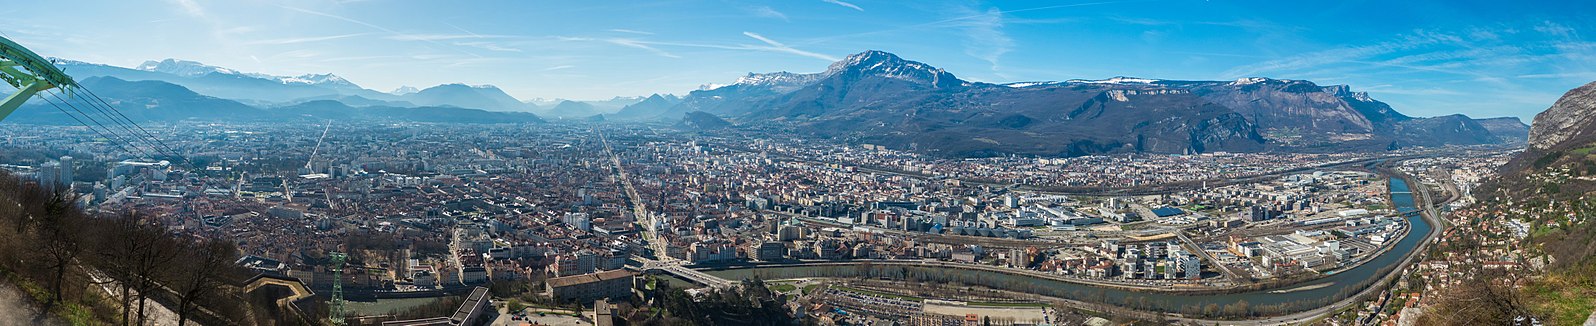 Grenoble (west side) from La Bastille